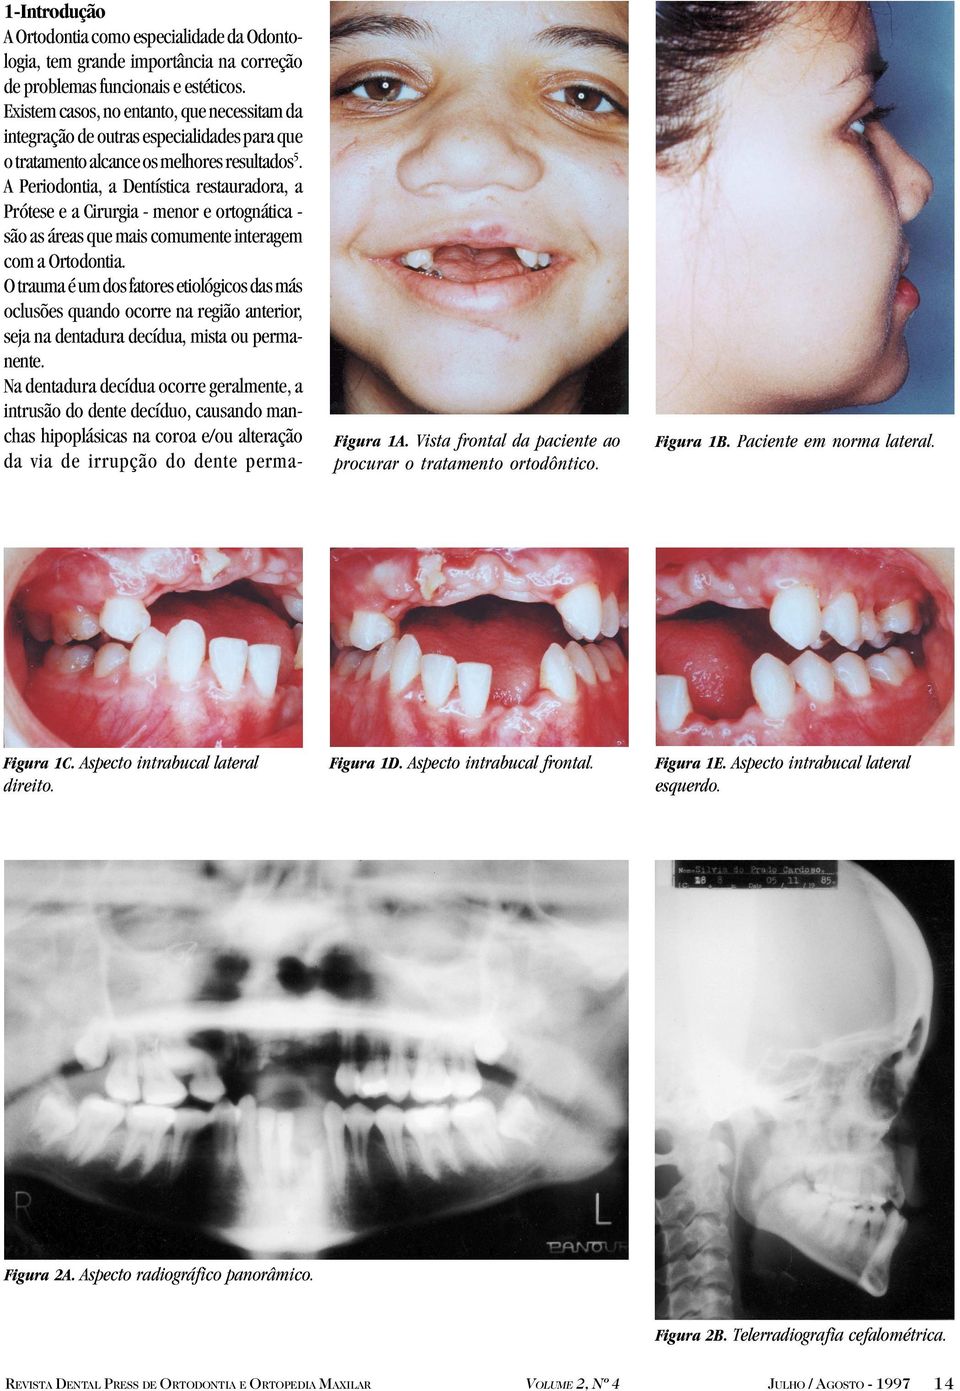 A Periodontia, a Dentística restauradora, a Prótese e a Cirurgia - menor e ortognática são as áreas que mais comumente interagem com a Ortodontia.